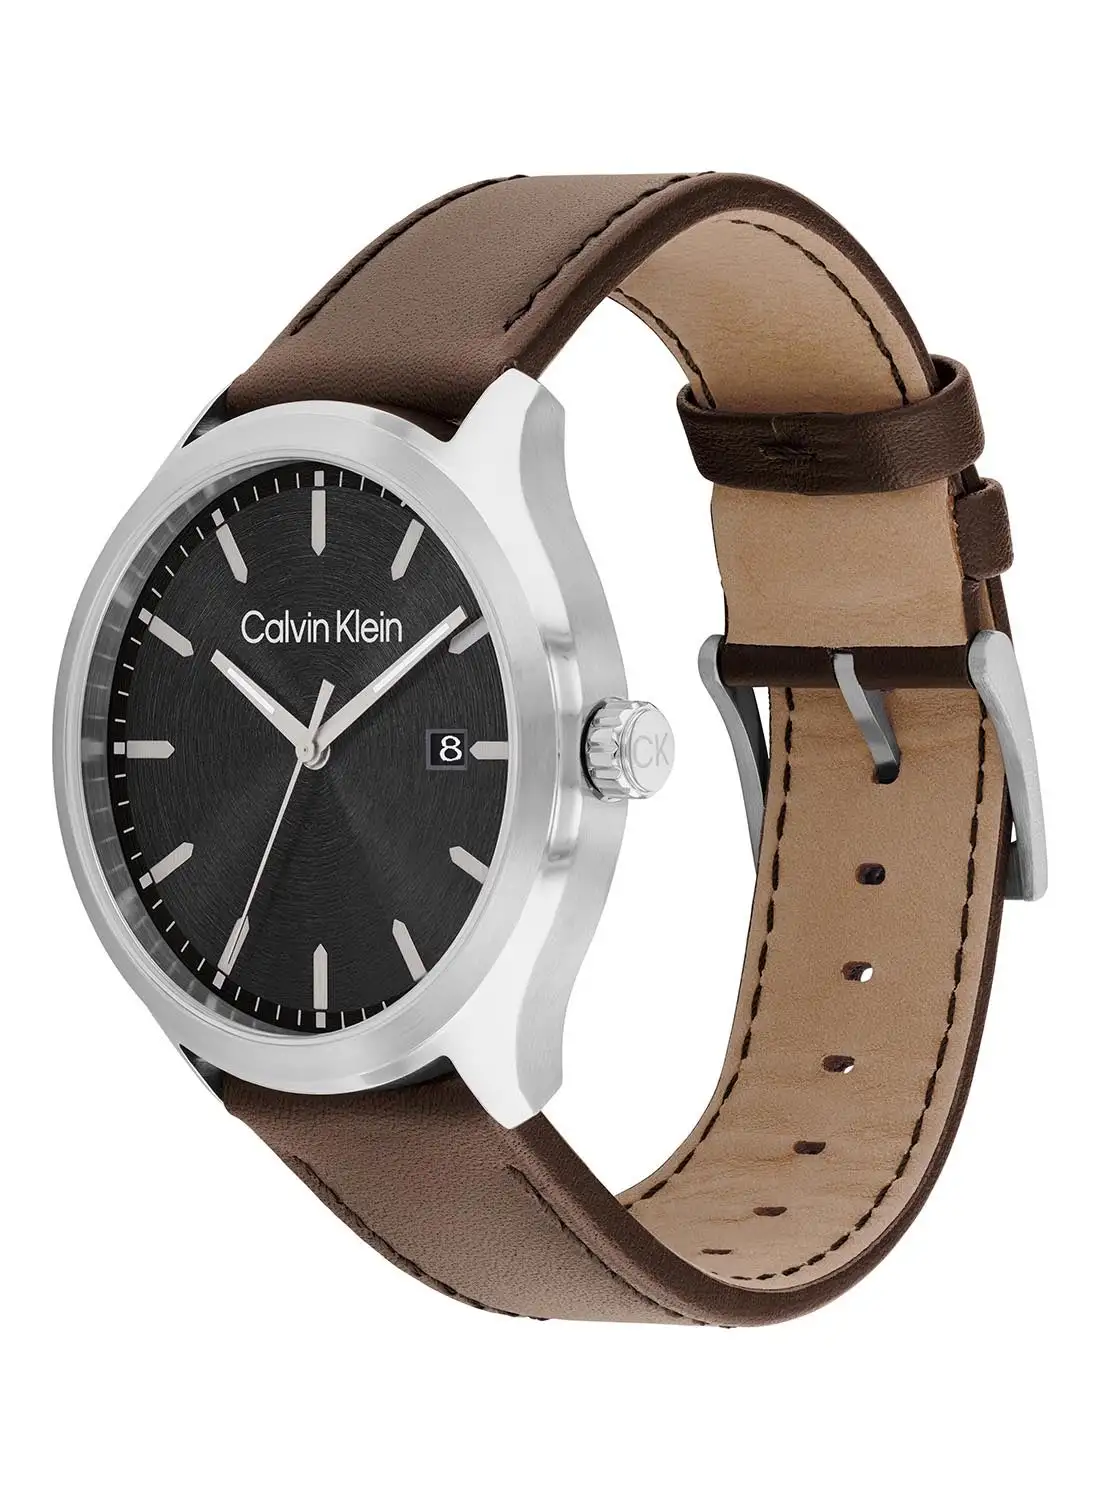 CALVIN KLEIN Men's Analog Round Shape Leather Wrist Watch 25200354 - 43 Mm